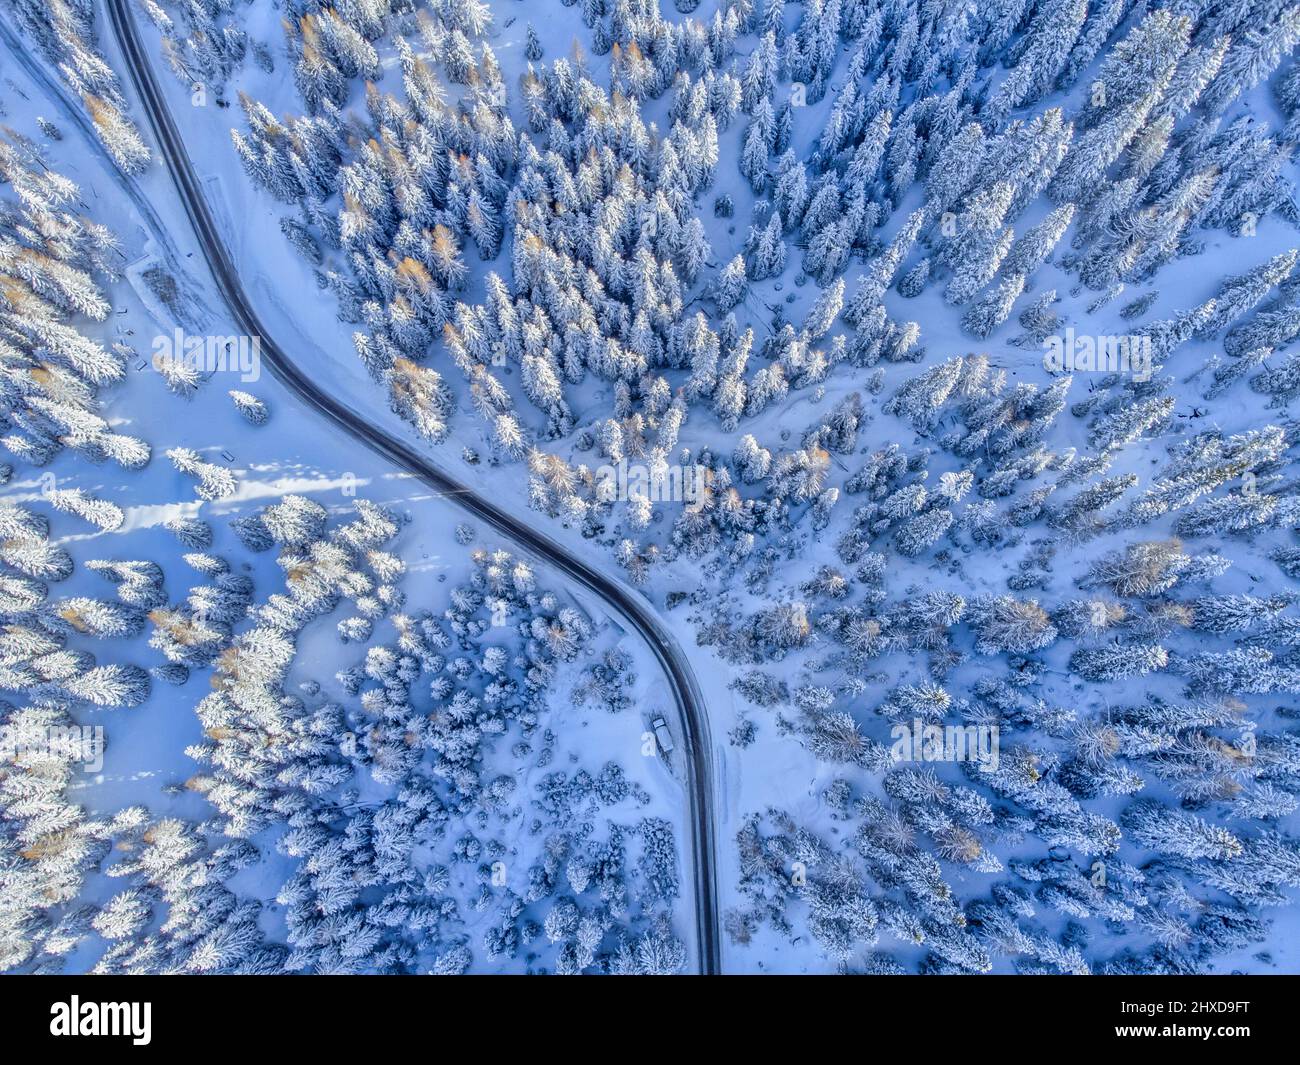 Europa, Italia, Veneto, provincia di Belluno, Dolomiti, strada di montagna che attraversa una foresta di conifere dopo una nevicata, vista dall'alto Foto Stock